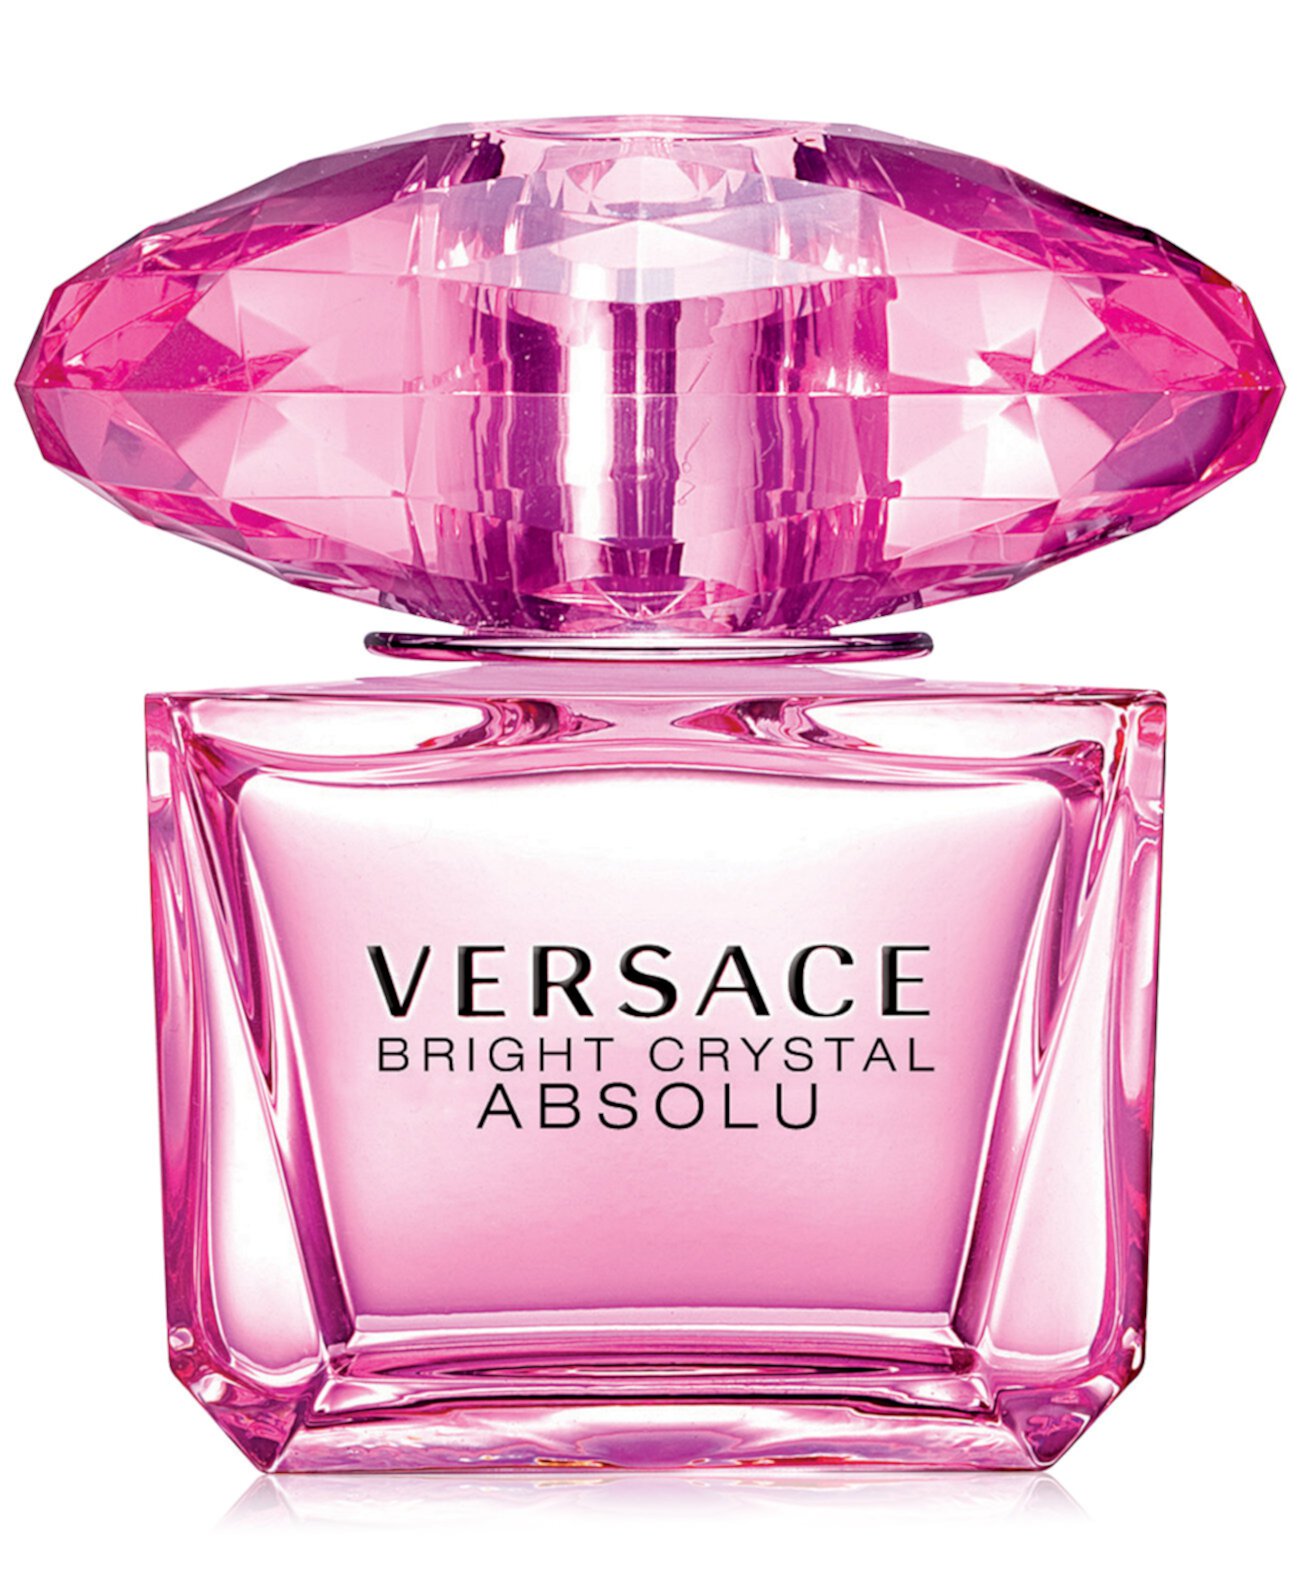 Bright Crystal Absolu Eau de Parfum Spray, 3 унции. Versace